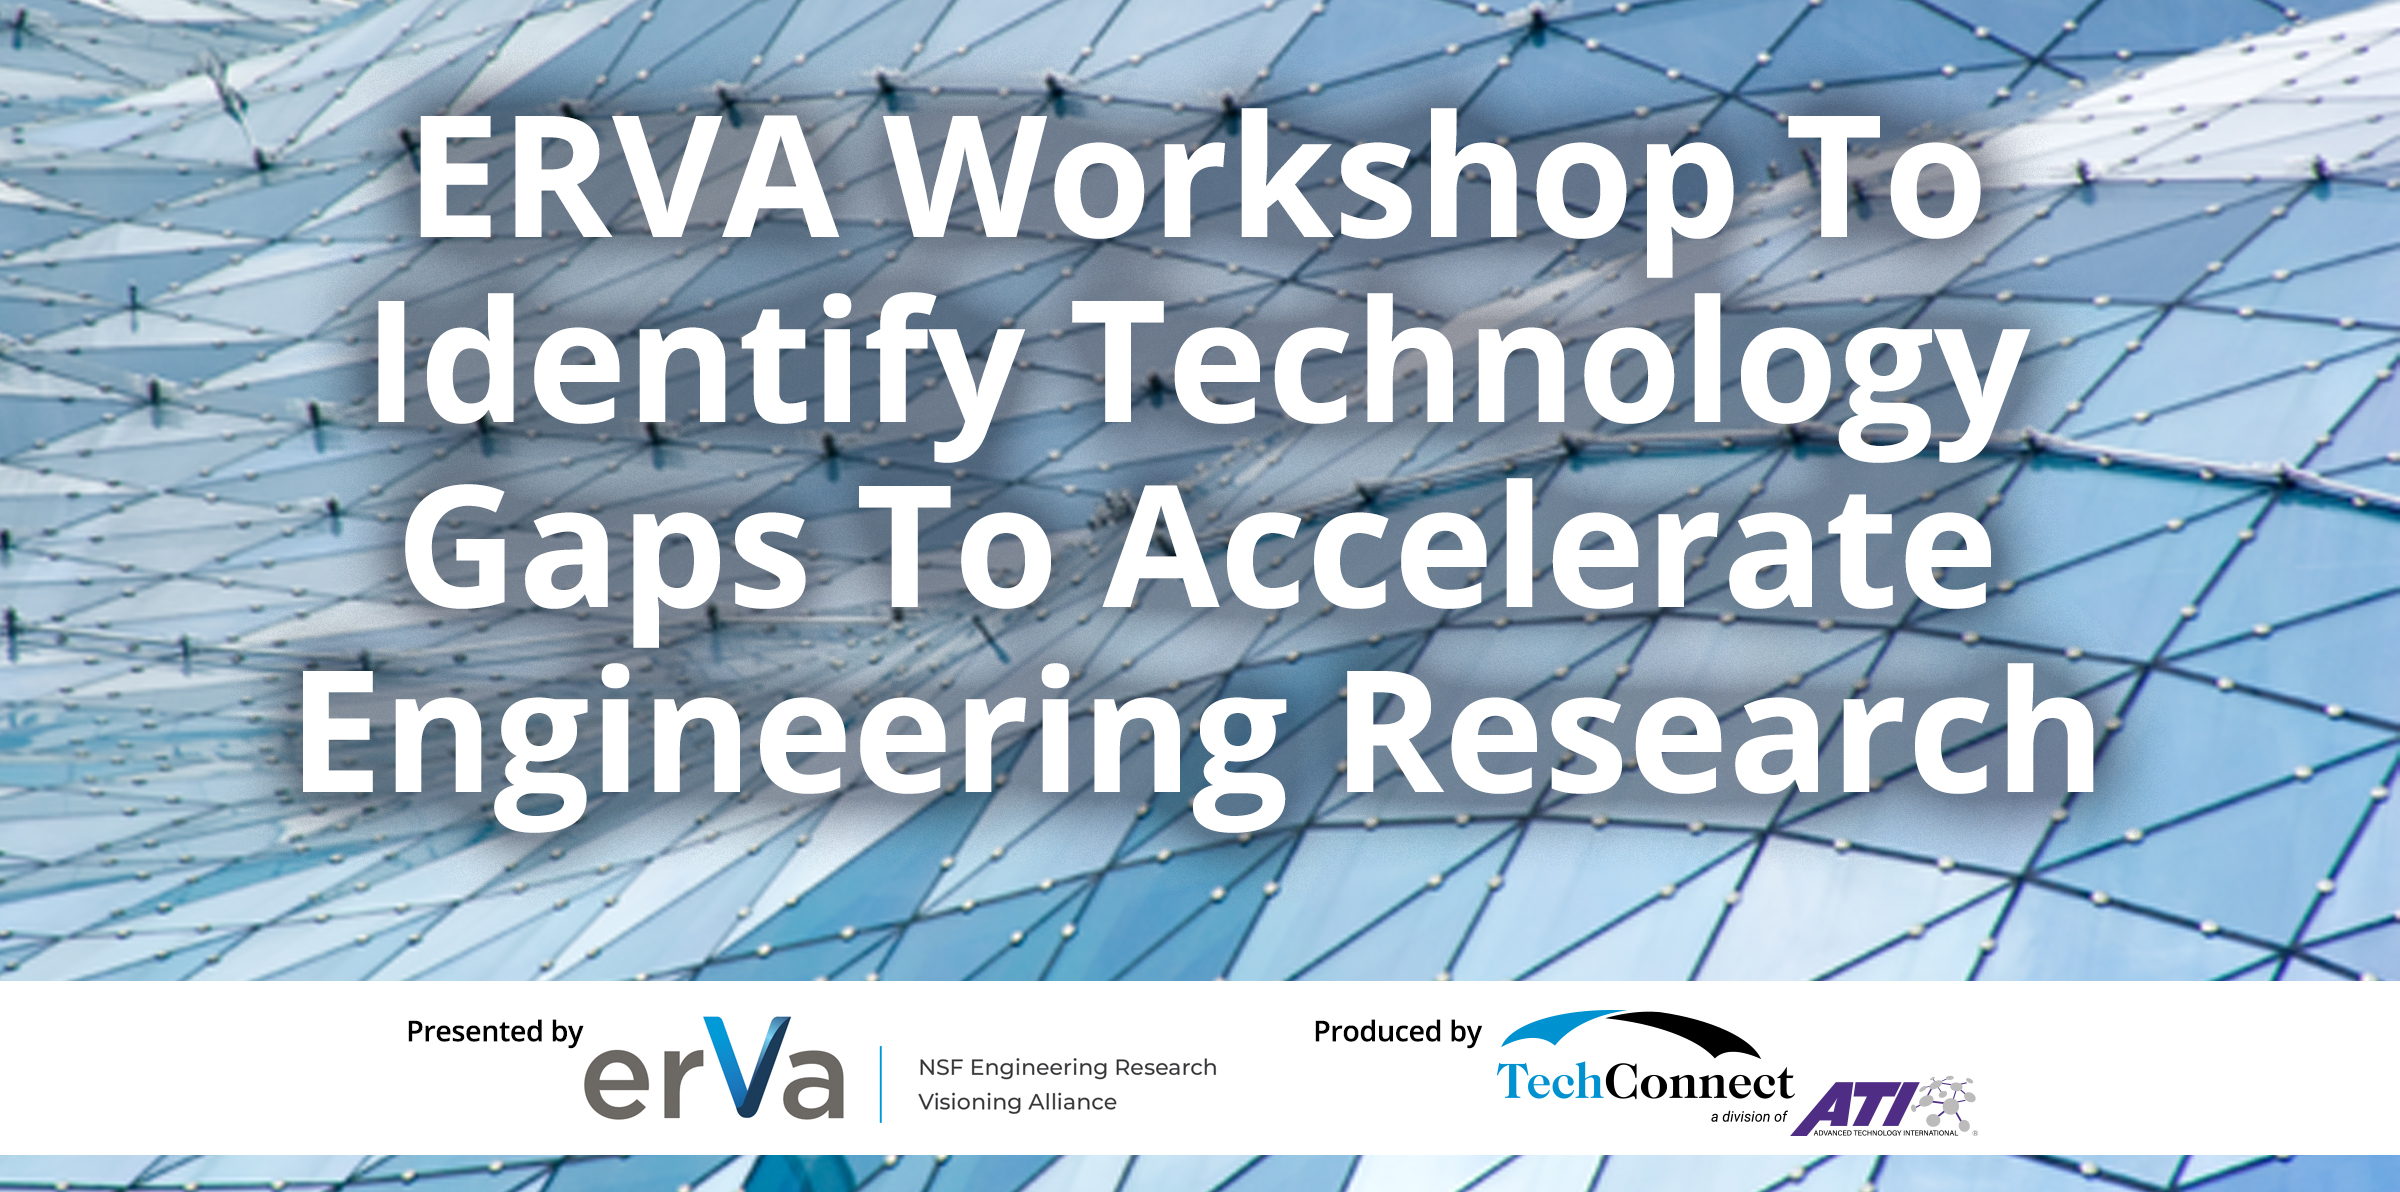 ERVA Workshop ToIdentify Technology Gaps To Accelerate Engineering Research